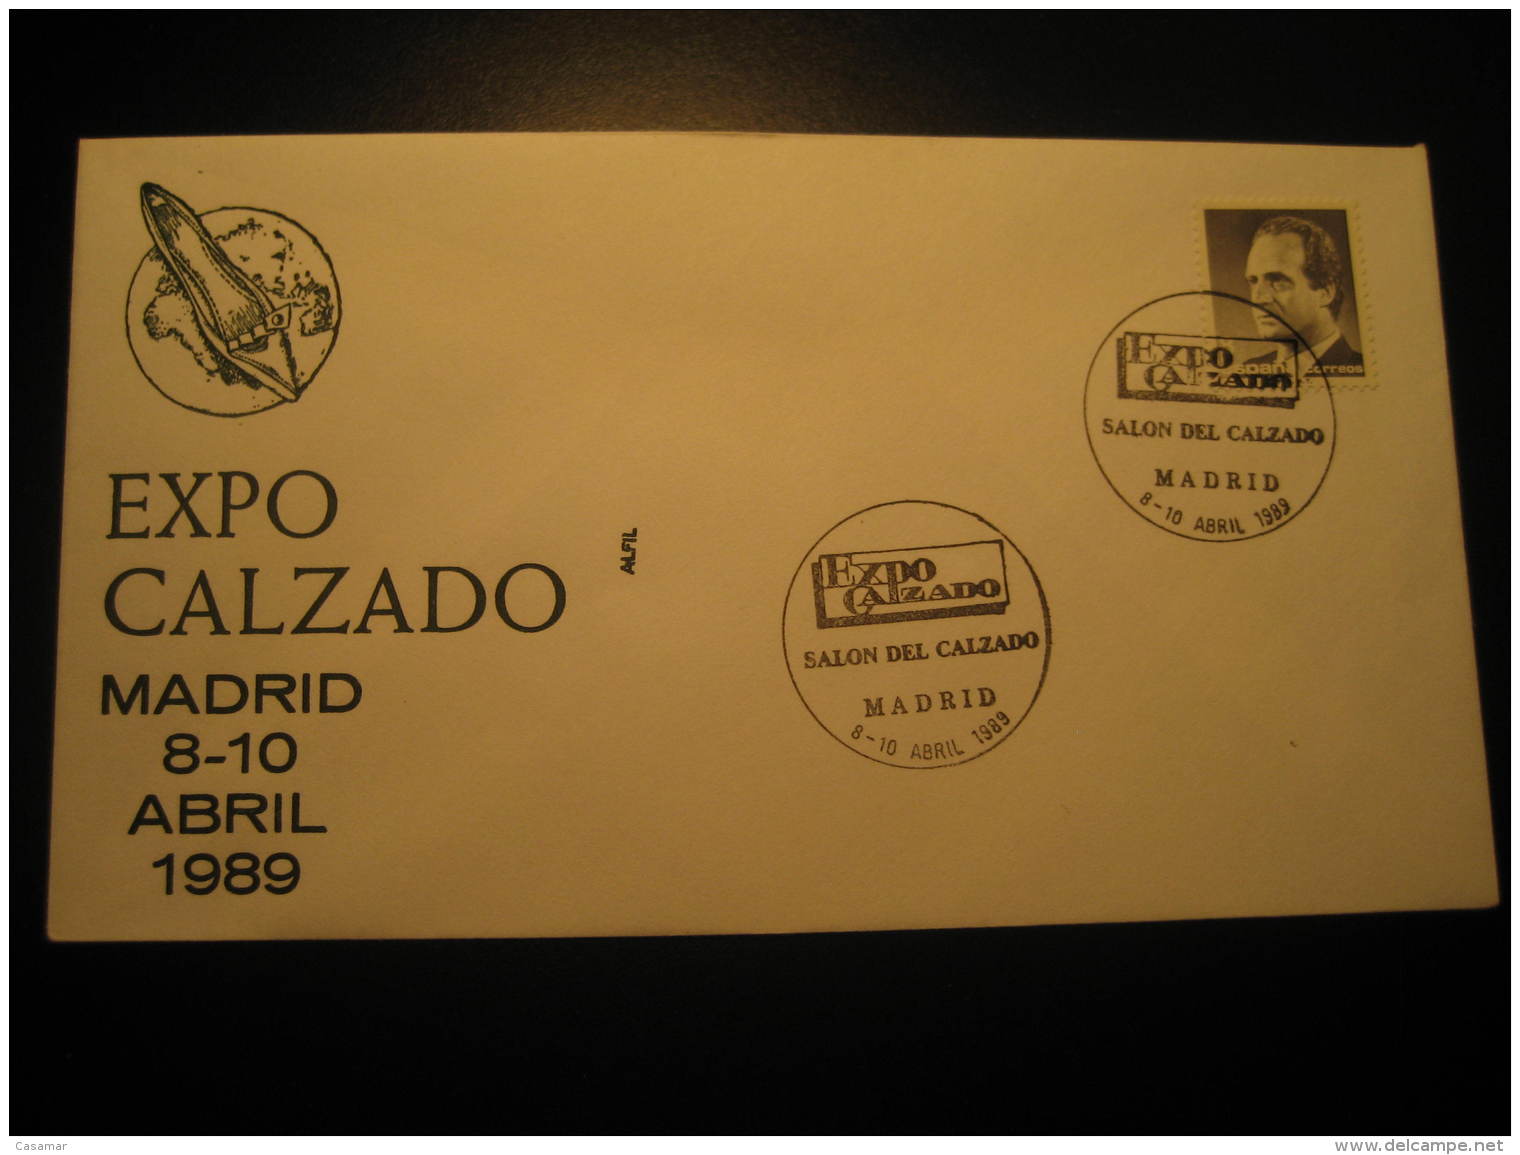 EXPO CALZADO Shoes Footwear Shod Textile Fashion MADRID 1989 Cancel Cover SPAIN - Tessili